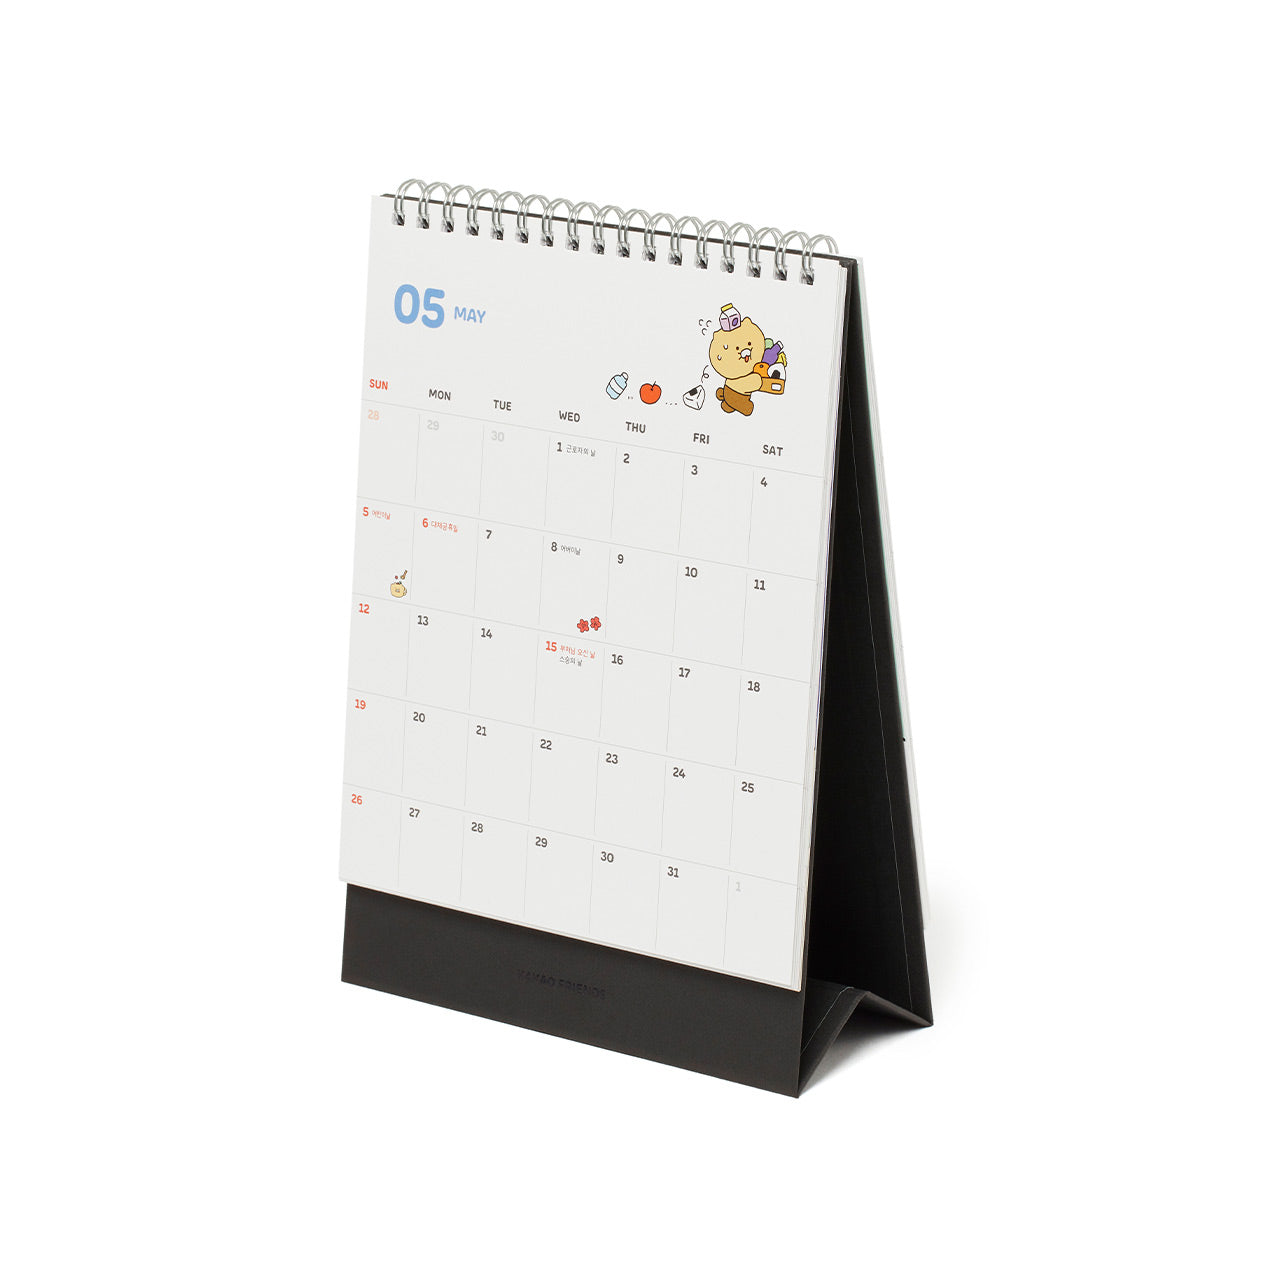 KAKAO FRIENDS 2024 Desk Calendar